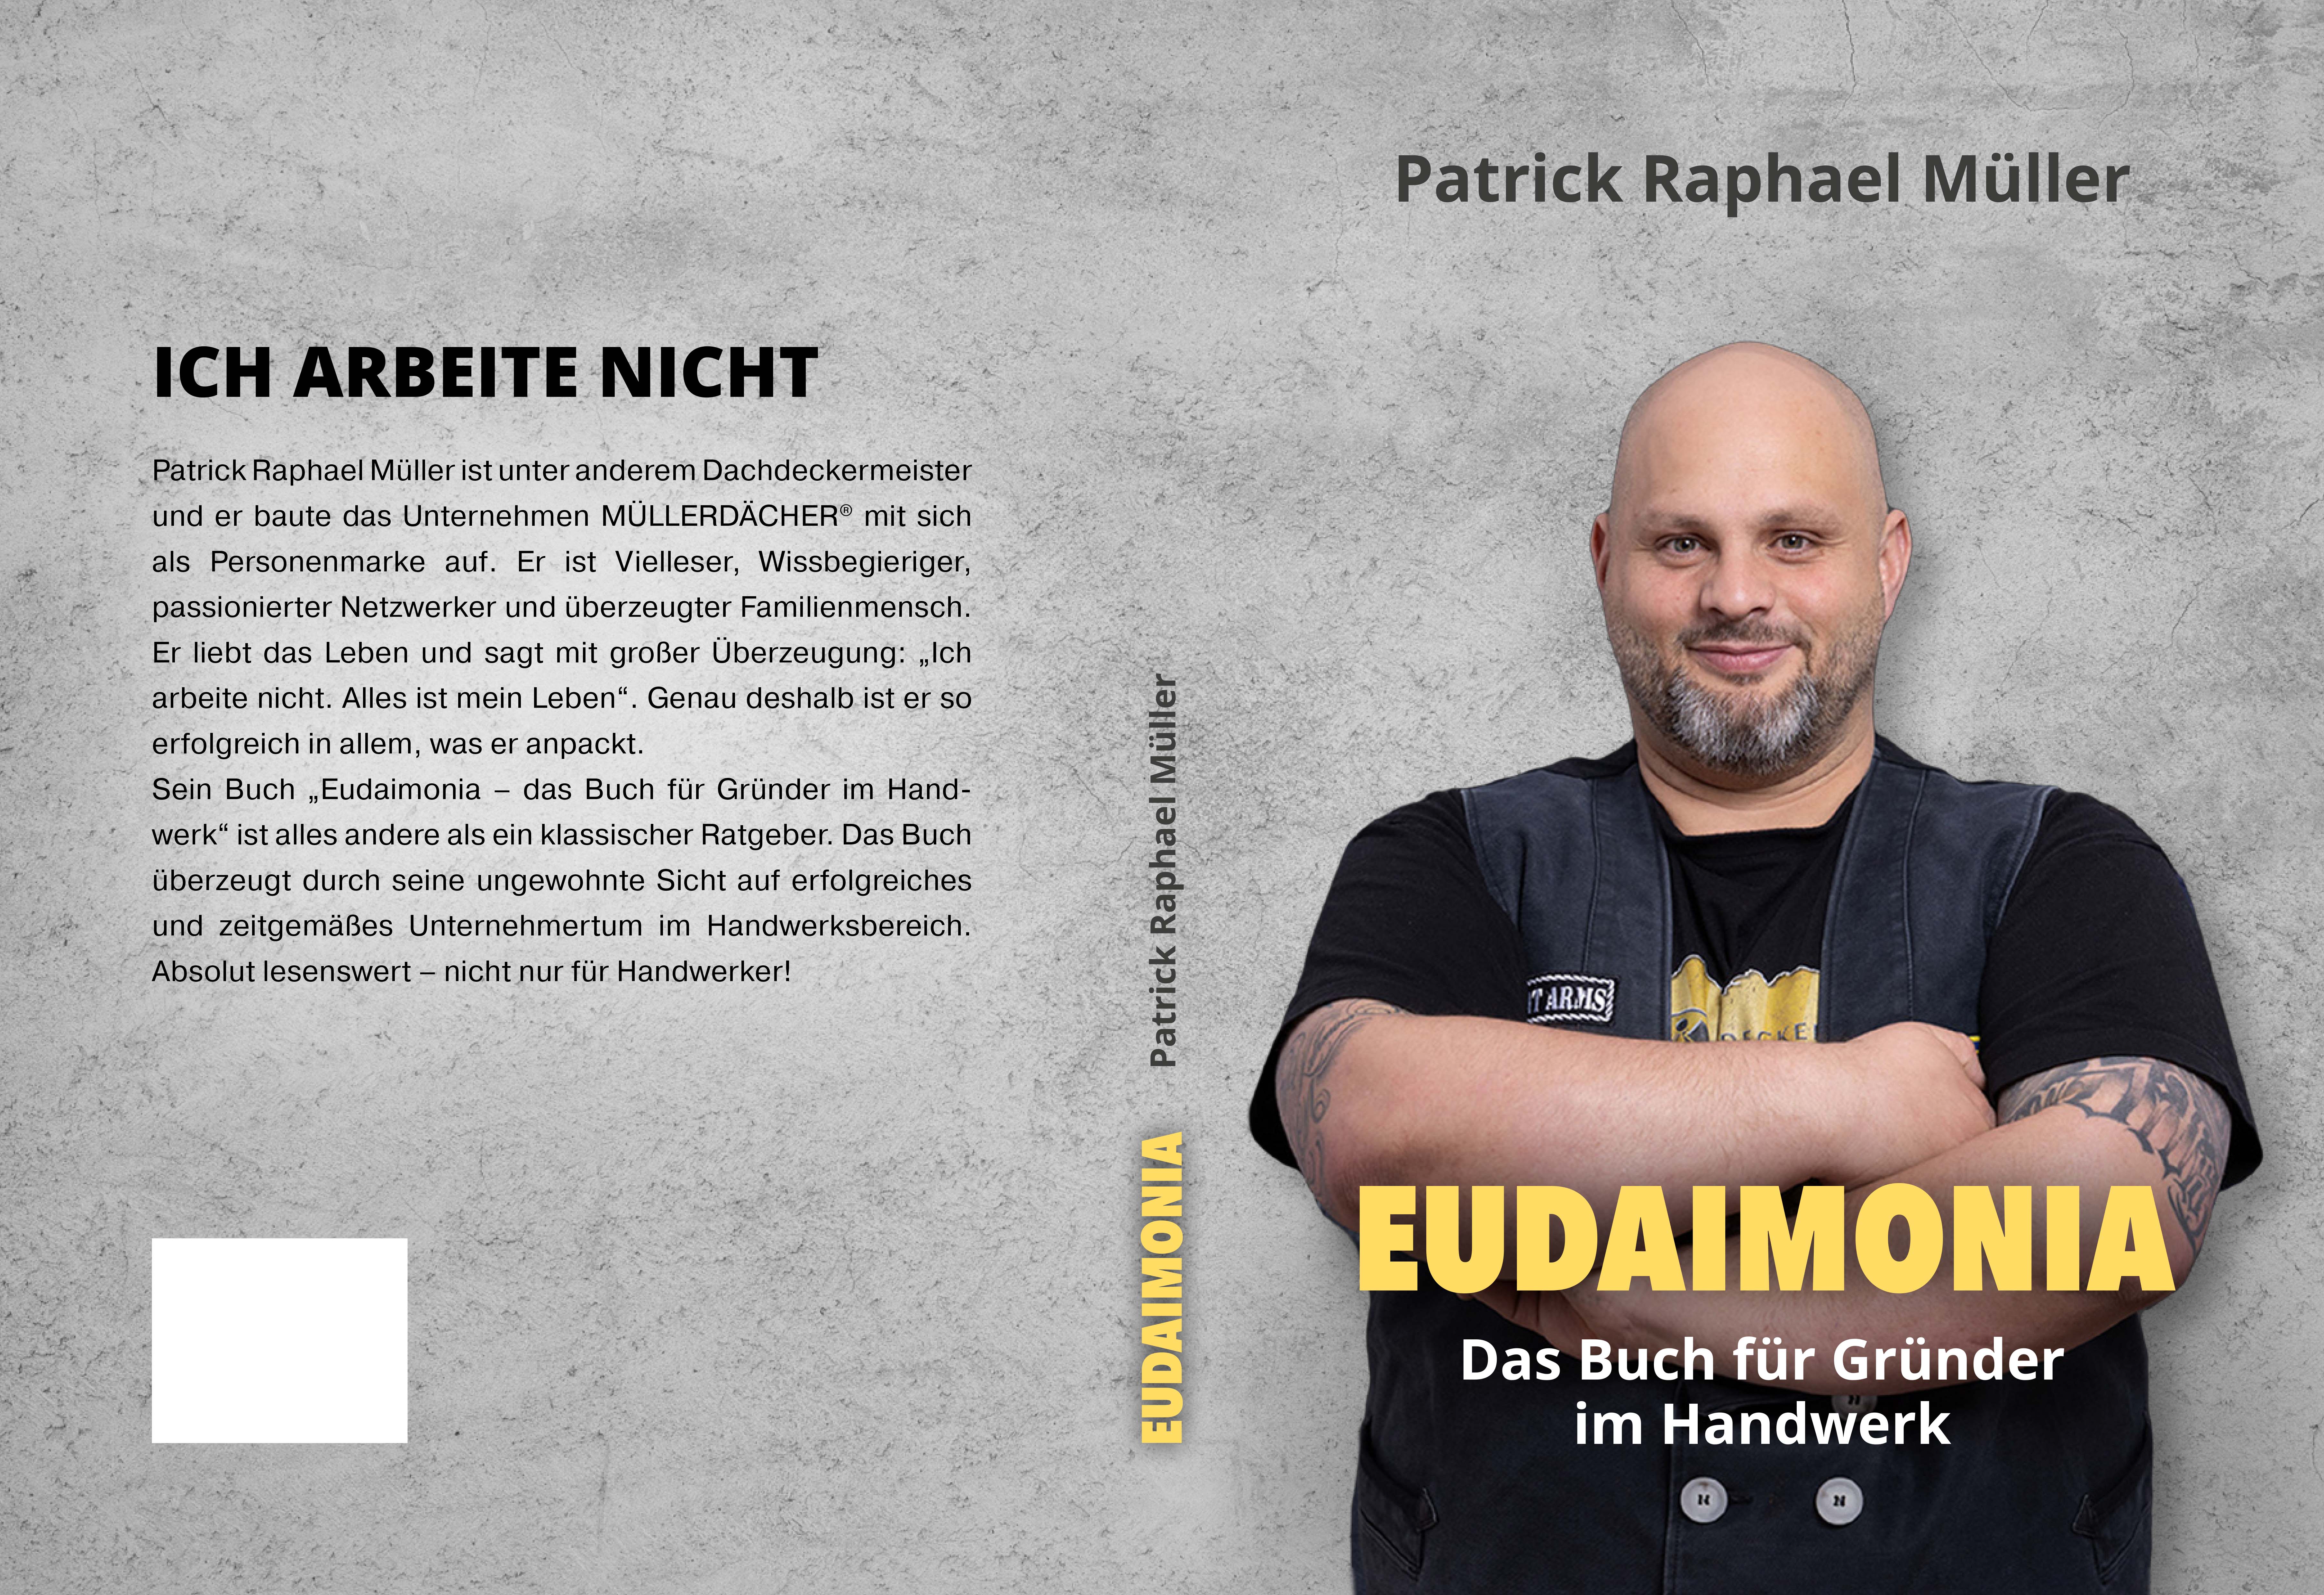 Eudaimonia - Das Buch für Gründer im Handwerk